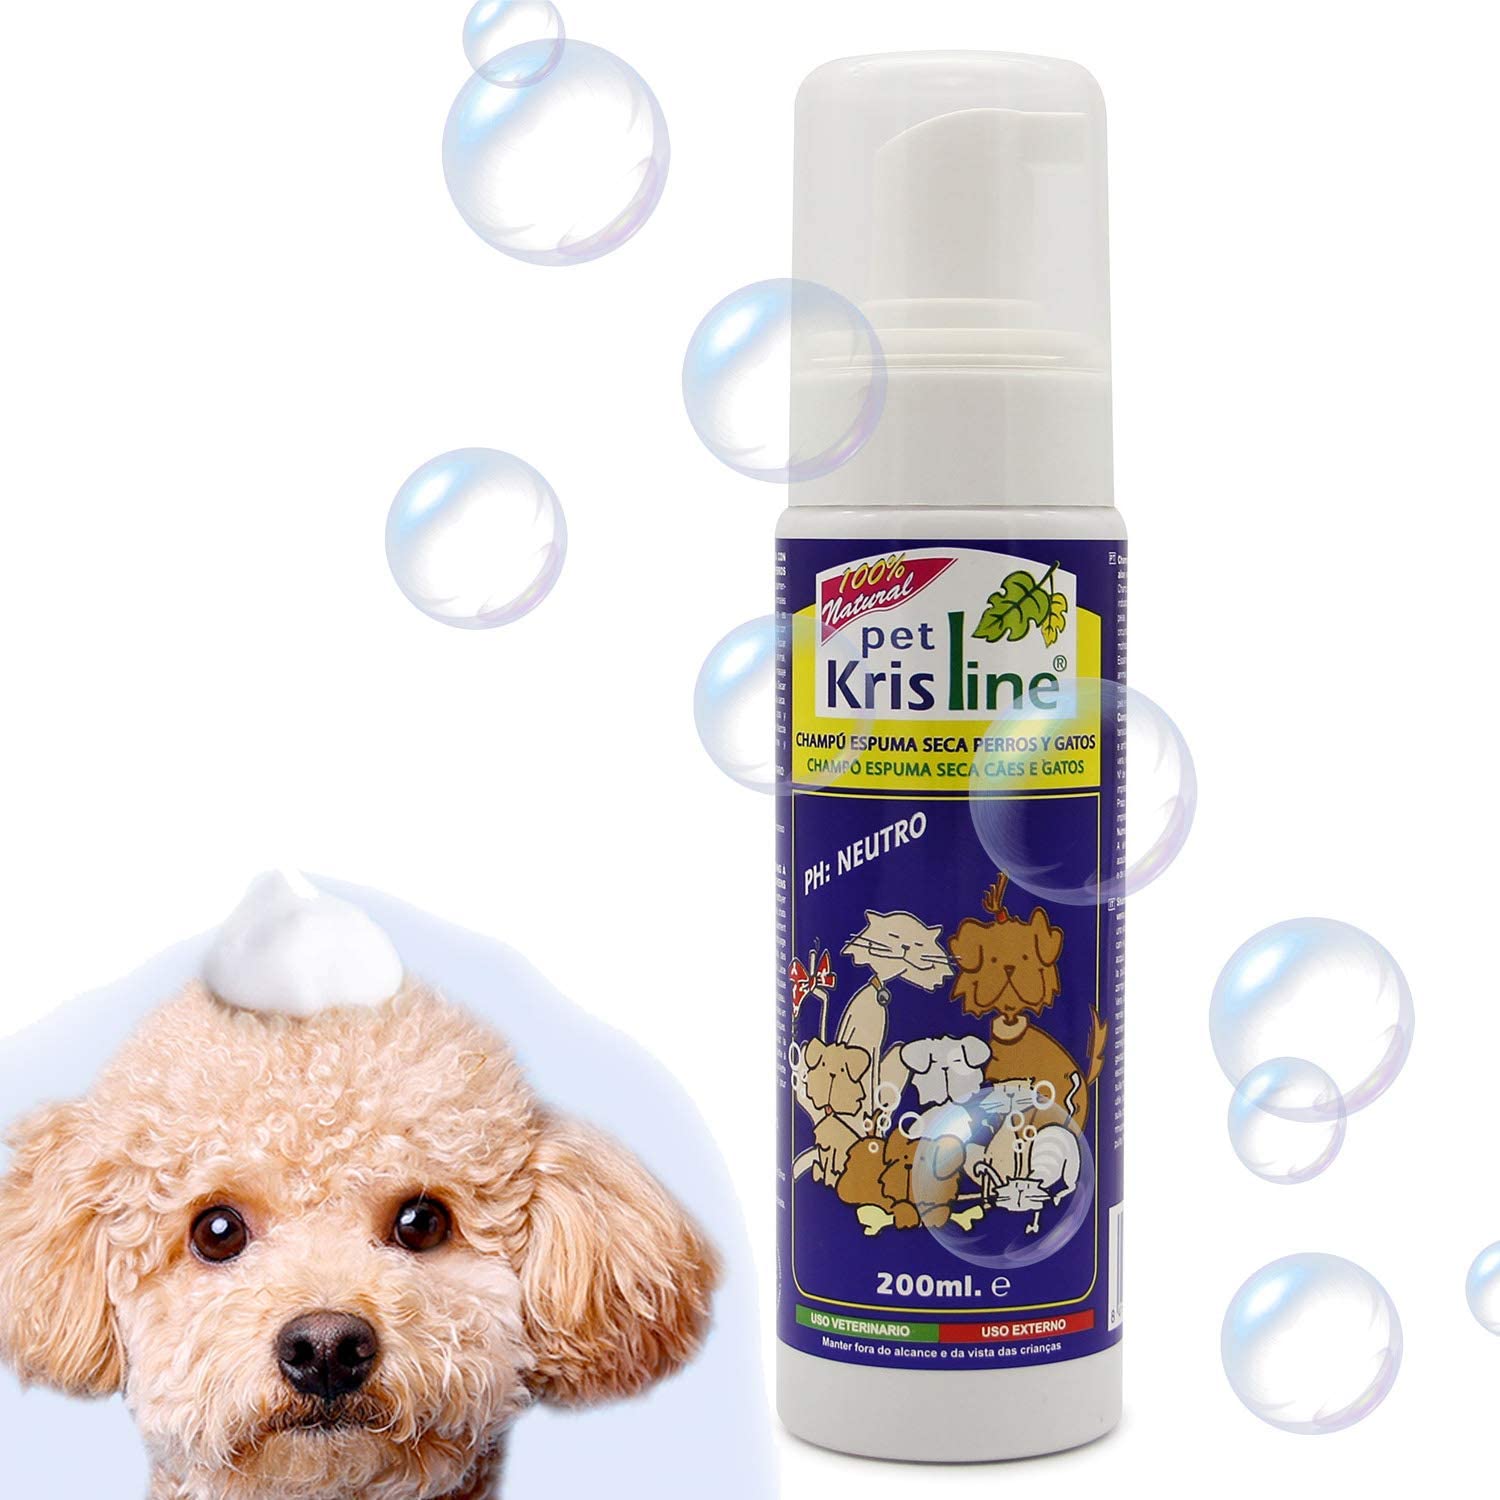  BPS (R Champú de Espuma Seca, Shampoo para Perro, Gato, Animales Domésticos. 00128 